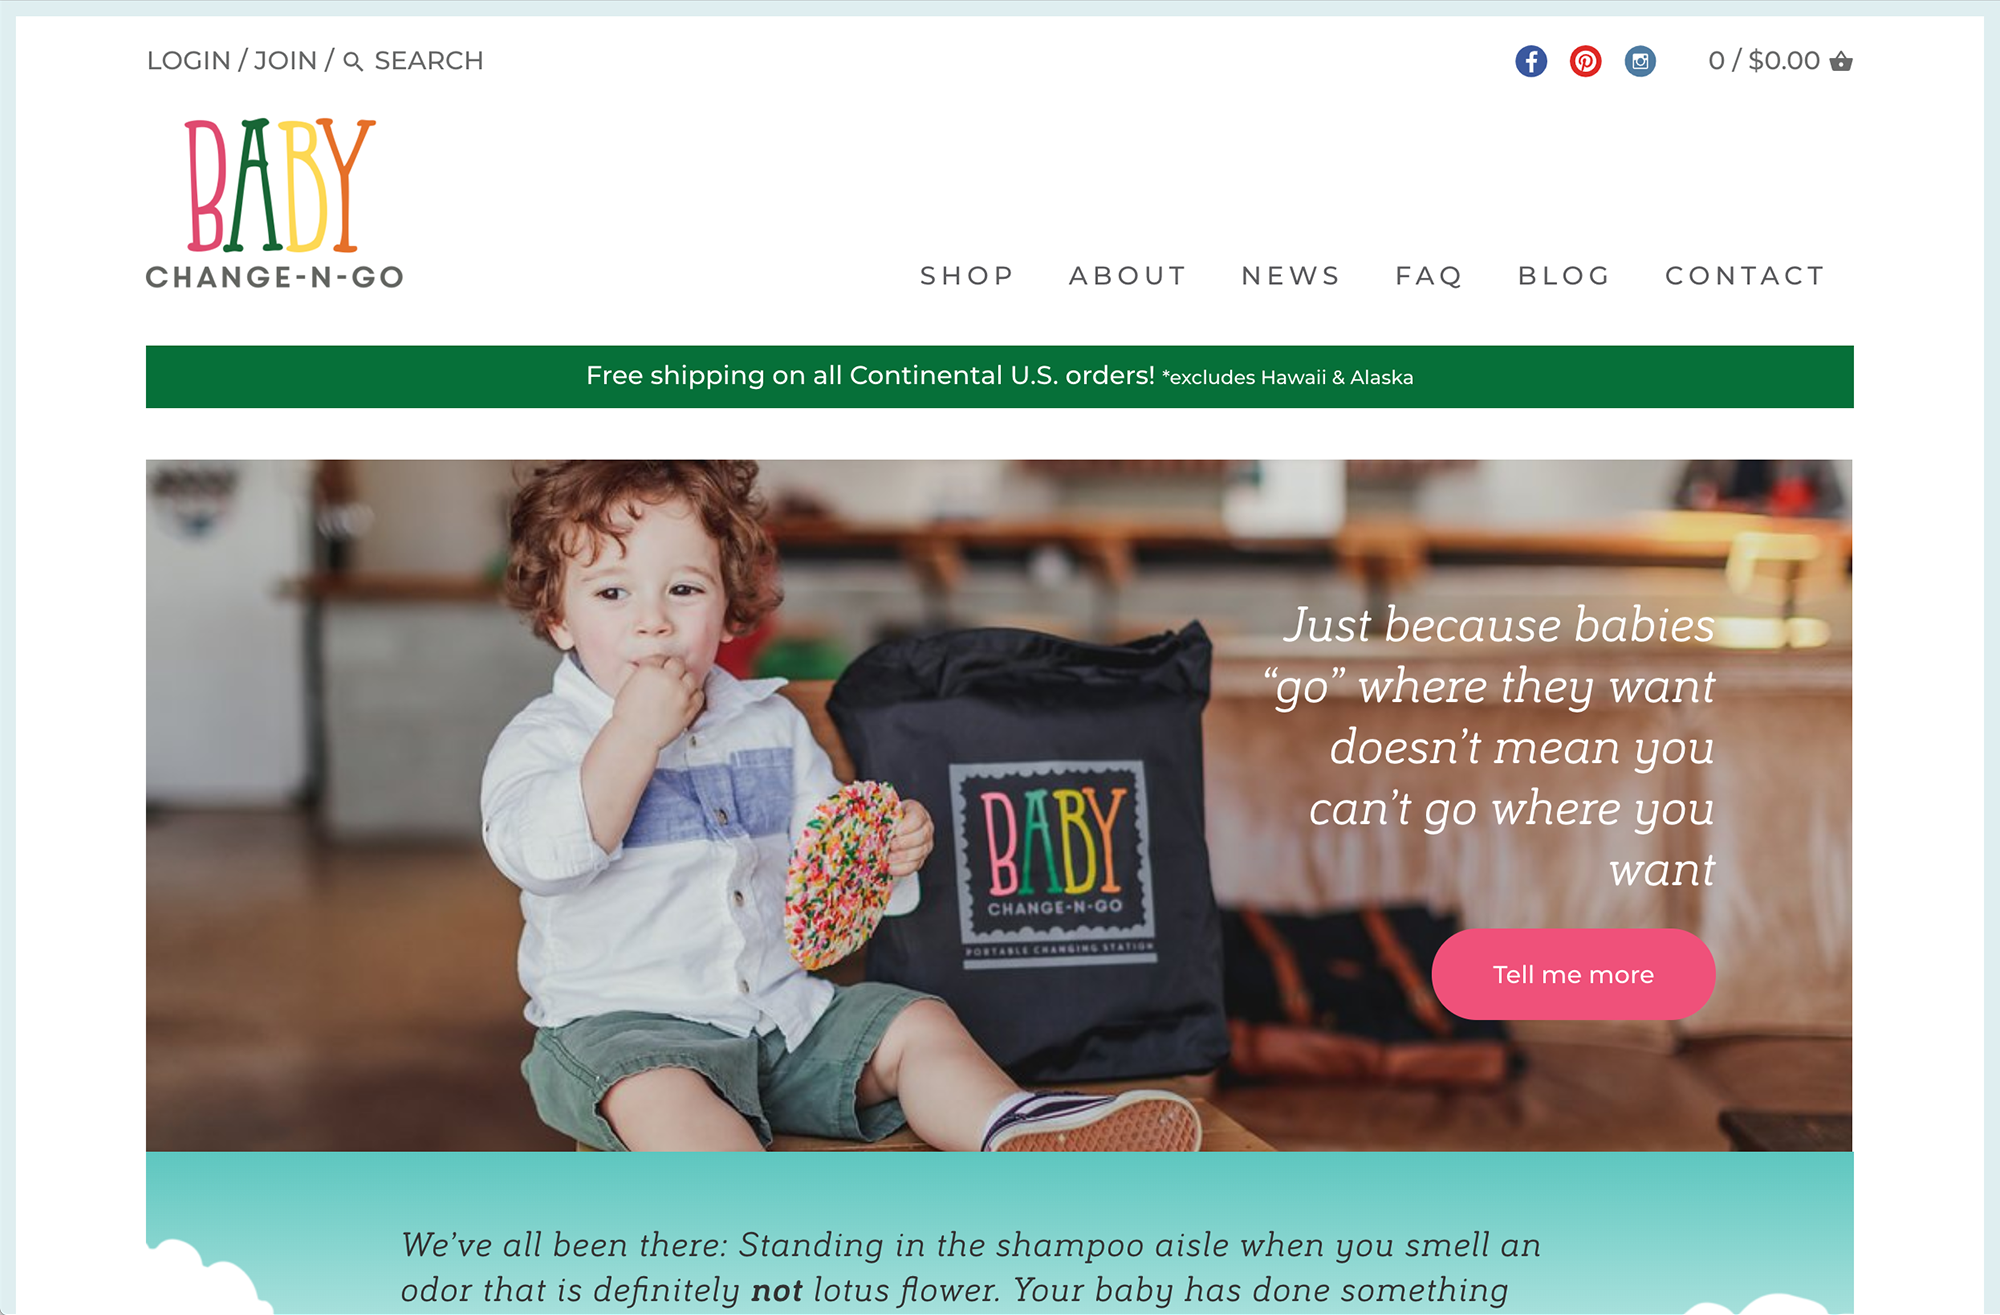 Screenshot of the Baby Change-N-Go Website